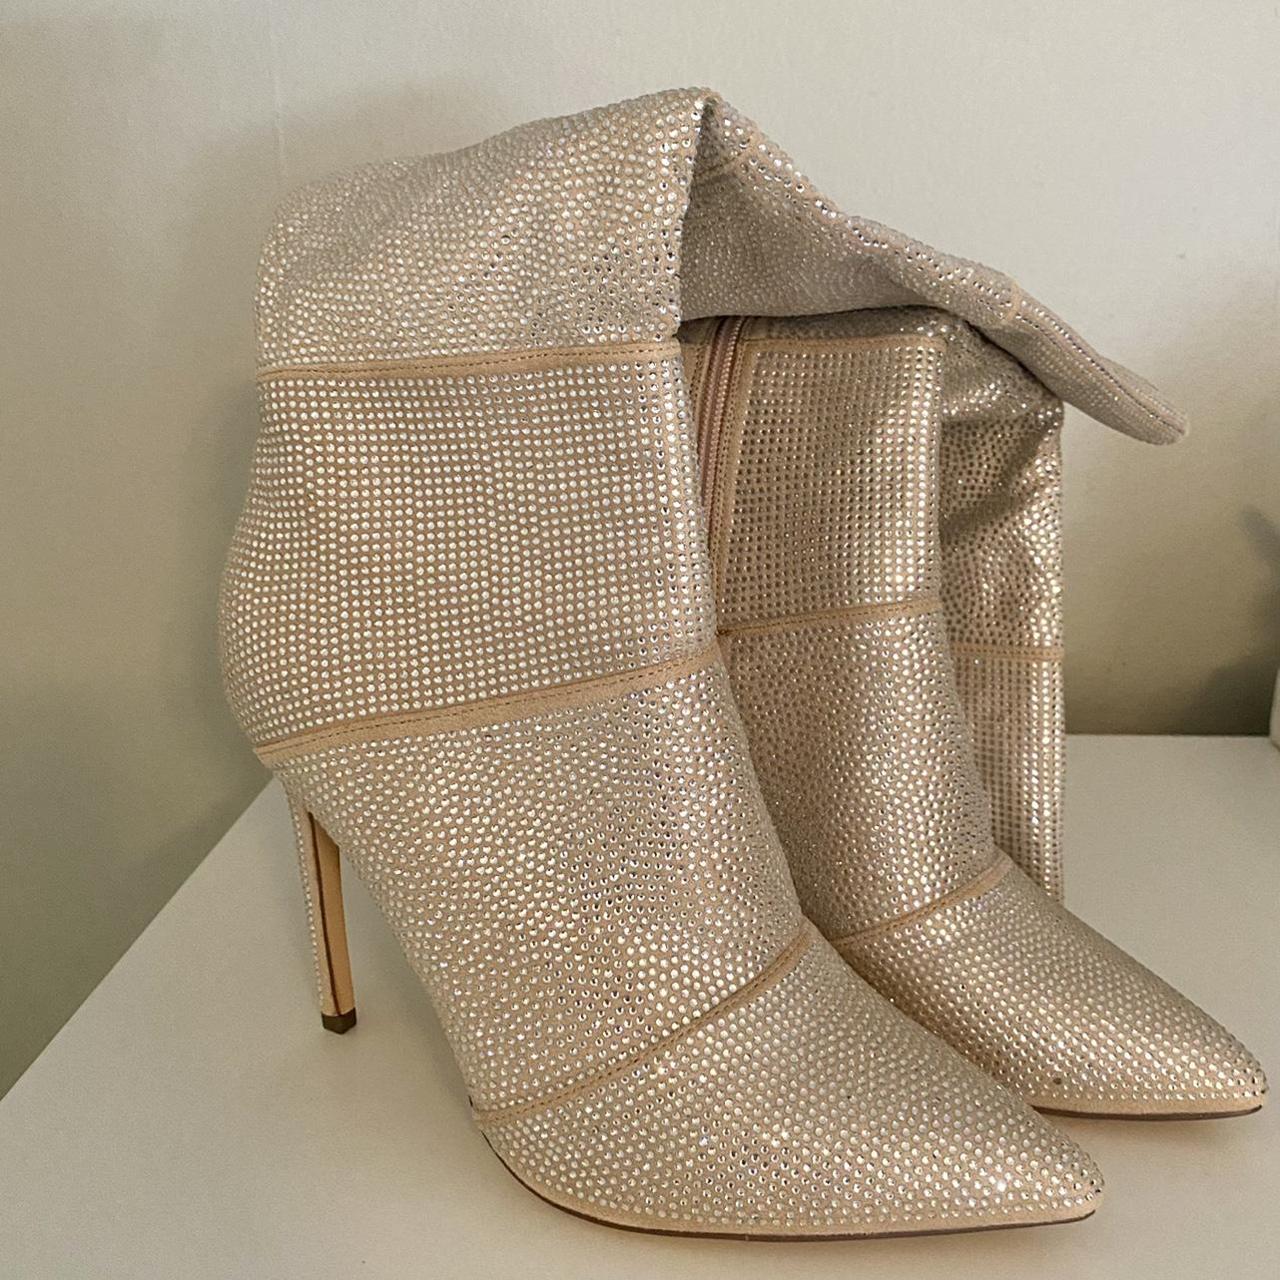 Gold bedazzled boot heels — Lulus Never worn... - Depop